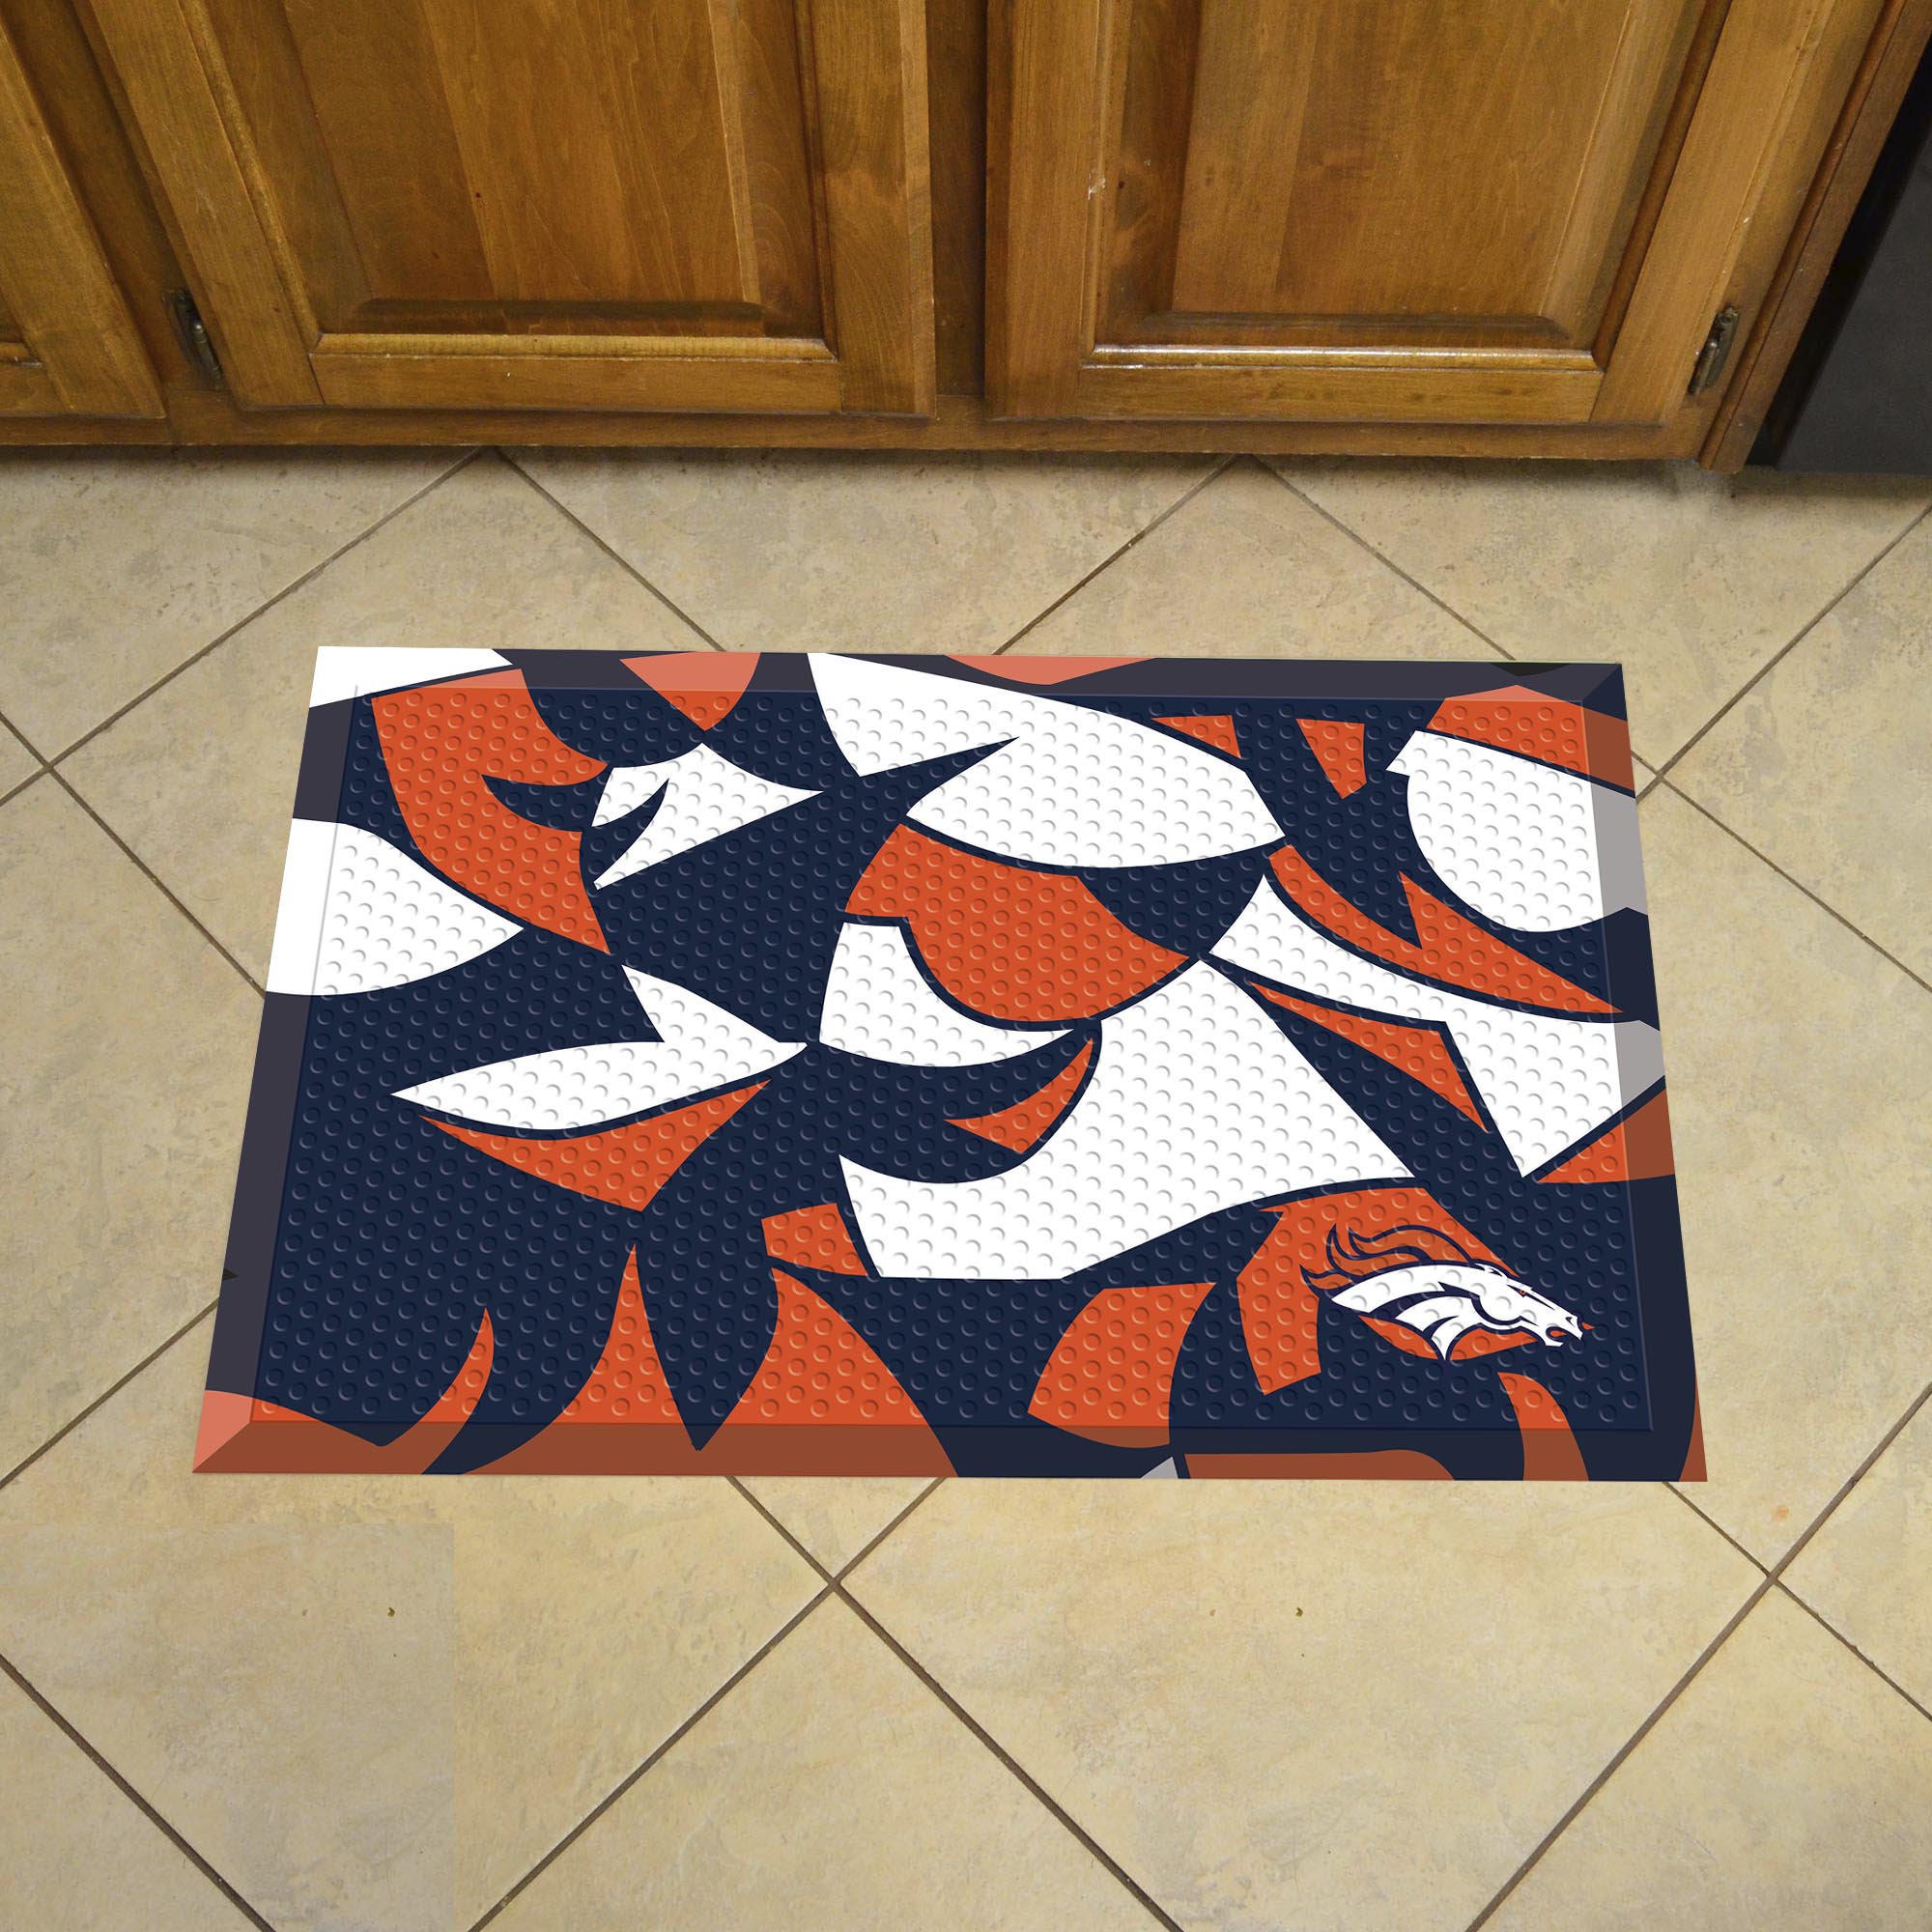 Denver Broncos Quick Snap Scrapper Doormat - 19 x 30 rubber